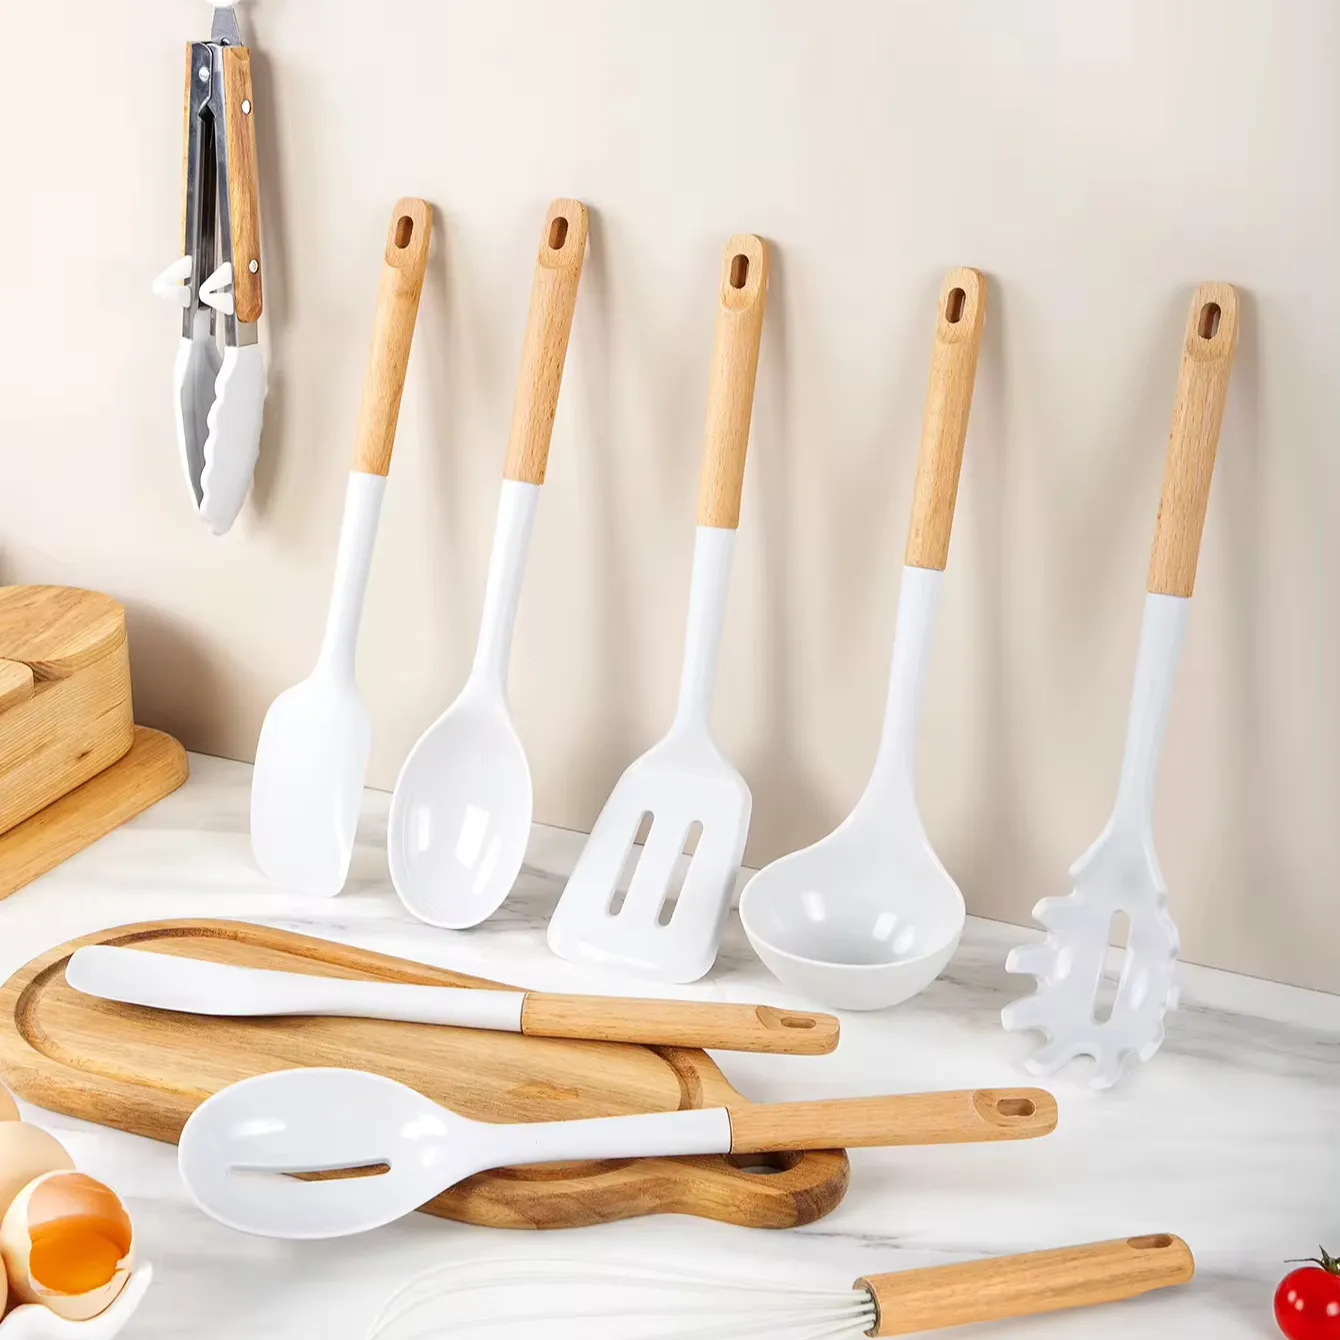 أدوات مطبخ جديدة للبيع بالجملة سيليكون أدوات المطبخ المزودة بأدوات يد من خشب القنفذ مستلزمات وأدوات للمطبخ